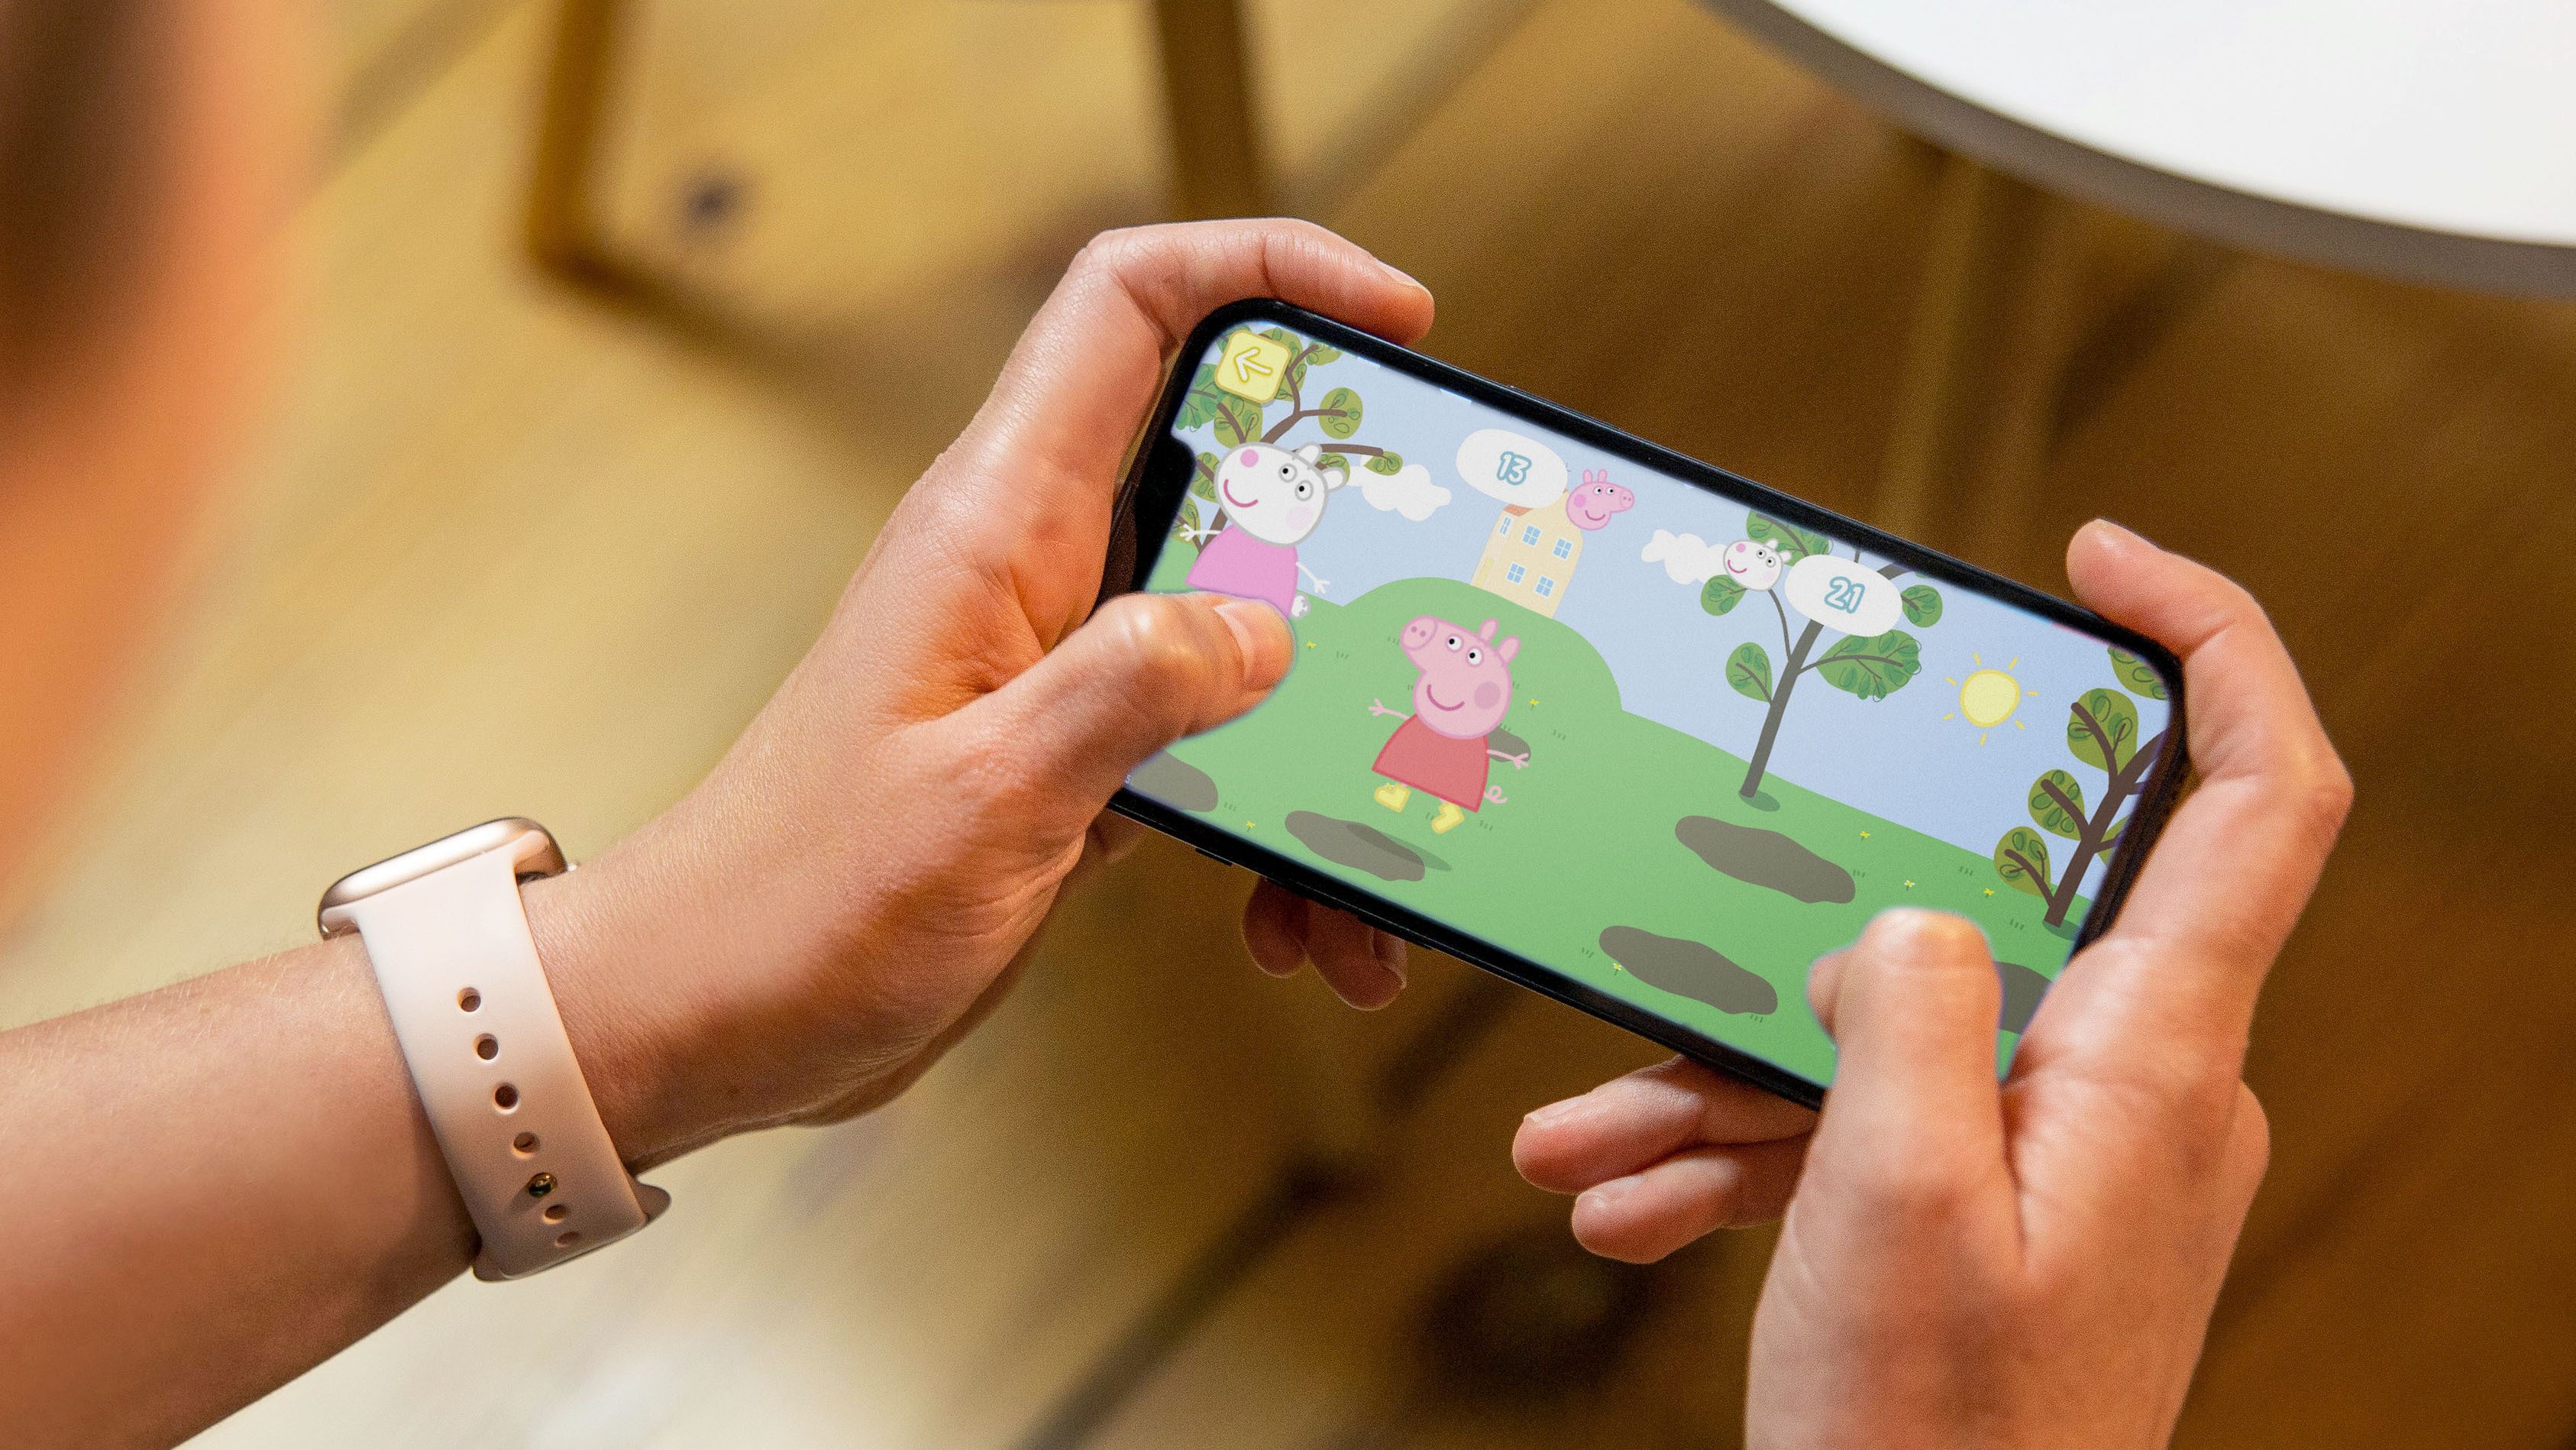 Download do APK de O Mundo da Peppa Pig: Jogos para Android